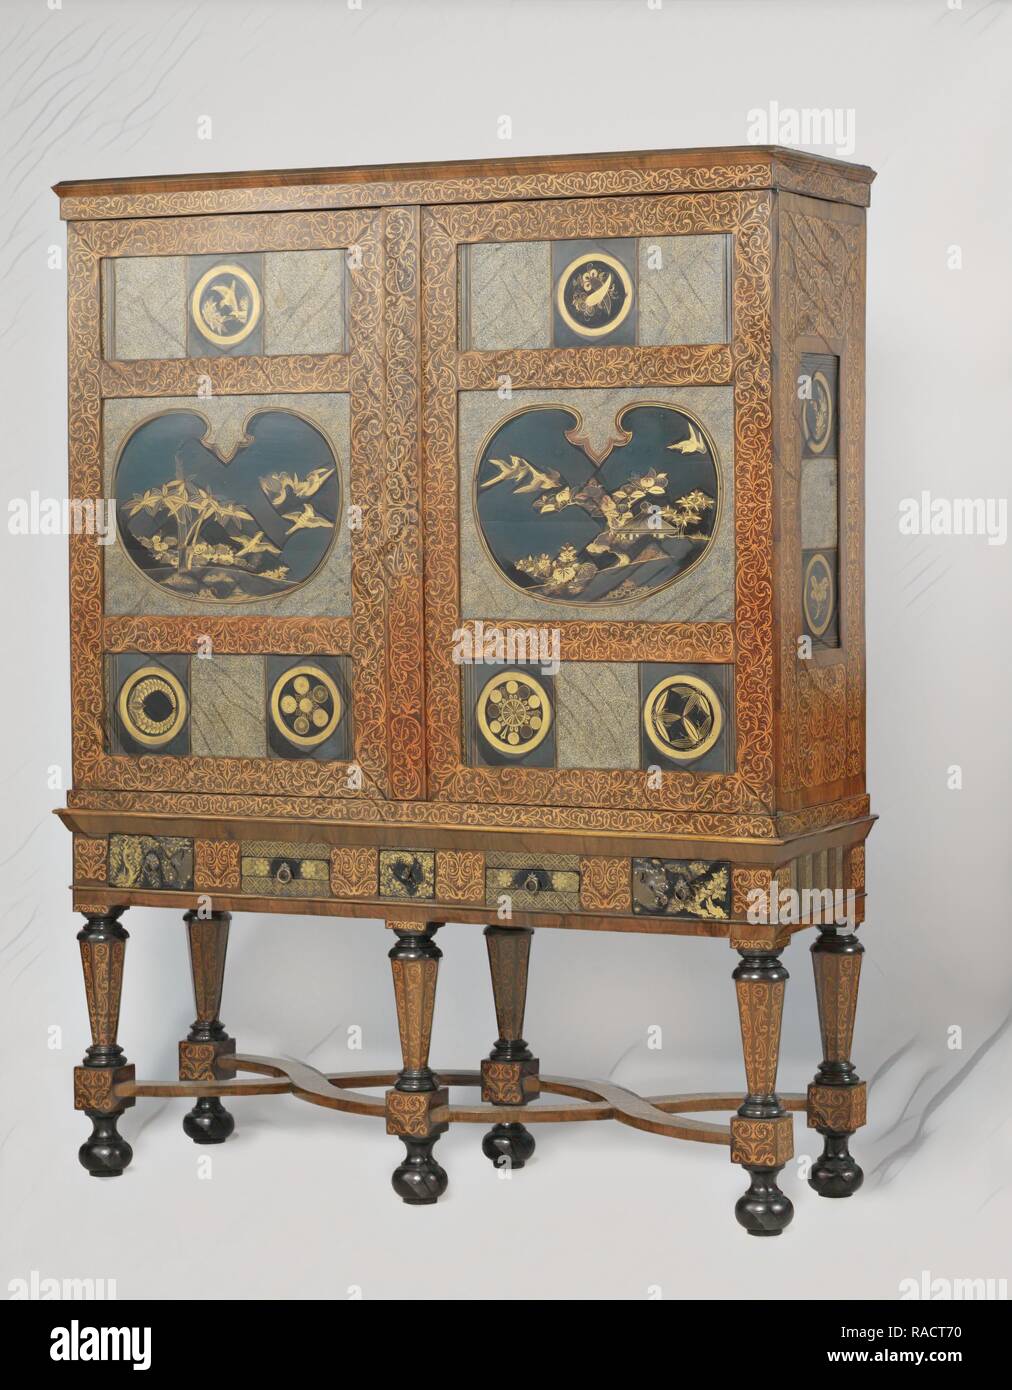 Cabinet, anonimo, c. 1690 - c. 170. Reinventato da Gibon. Arte Classica con un tocco di moderno reinventato Foto Stock